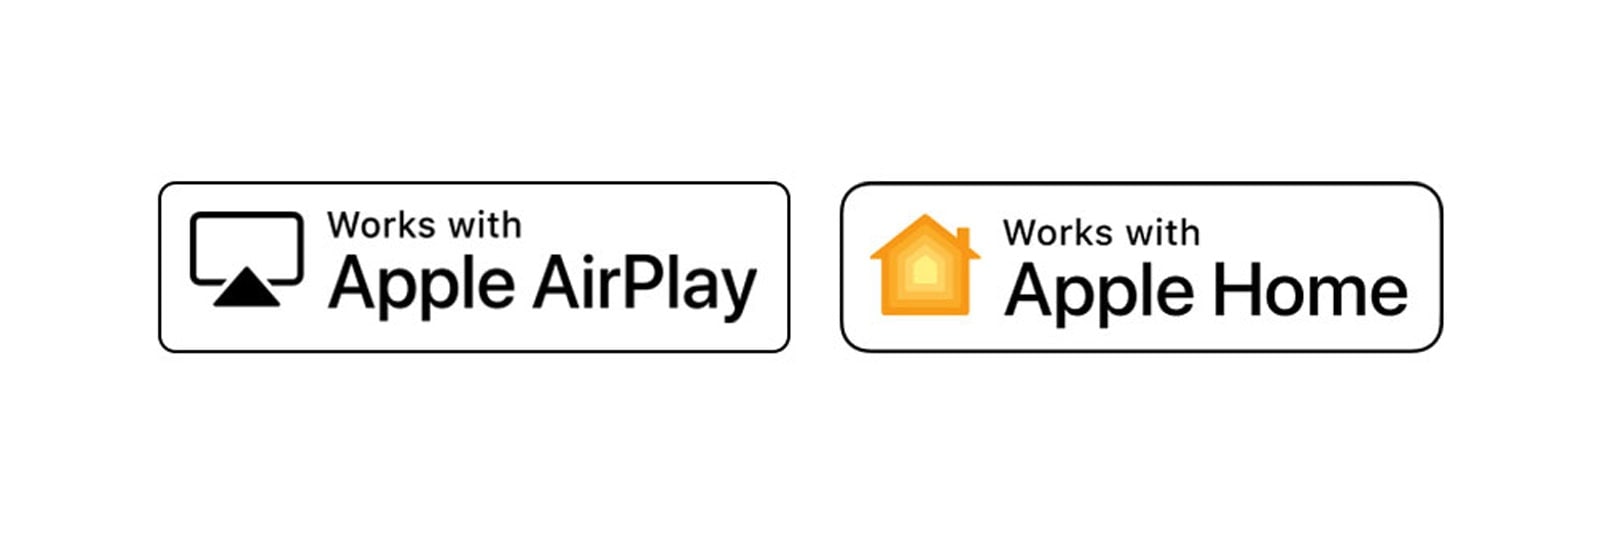 A deluje z logotipom Apple AirPlay A deluje z logotipom Apple Home